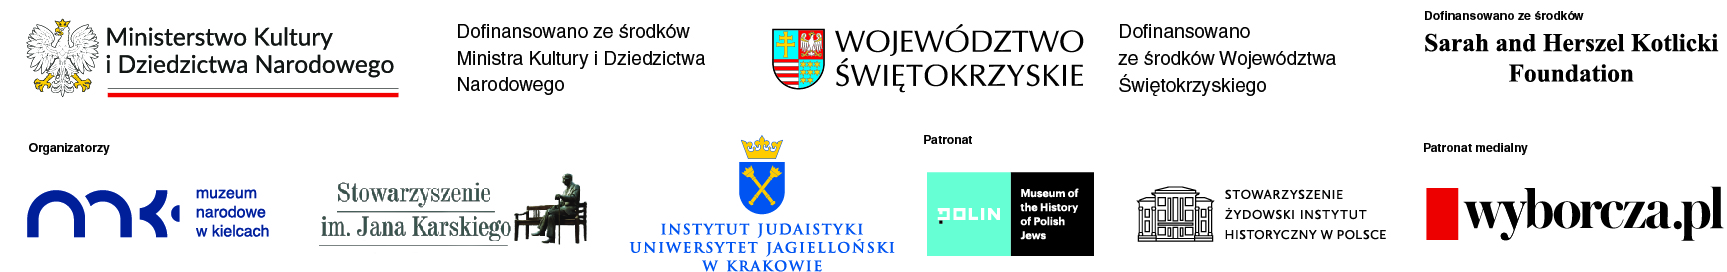 Belka logotypowa patronów i organizatorów konferencji naukowej „Żydowscy obywatele polskich miast i ich żydowskie dziedzictwo”.